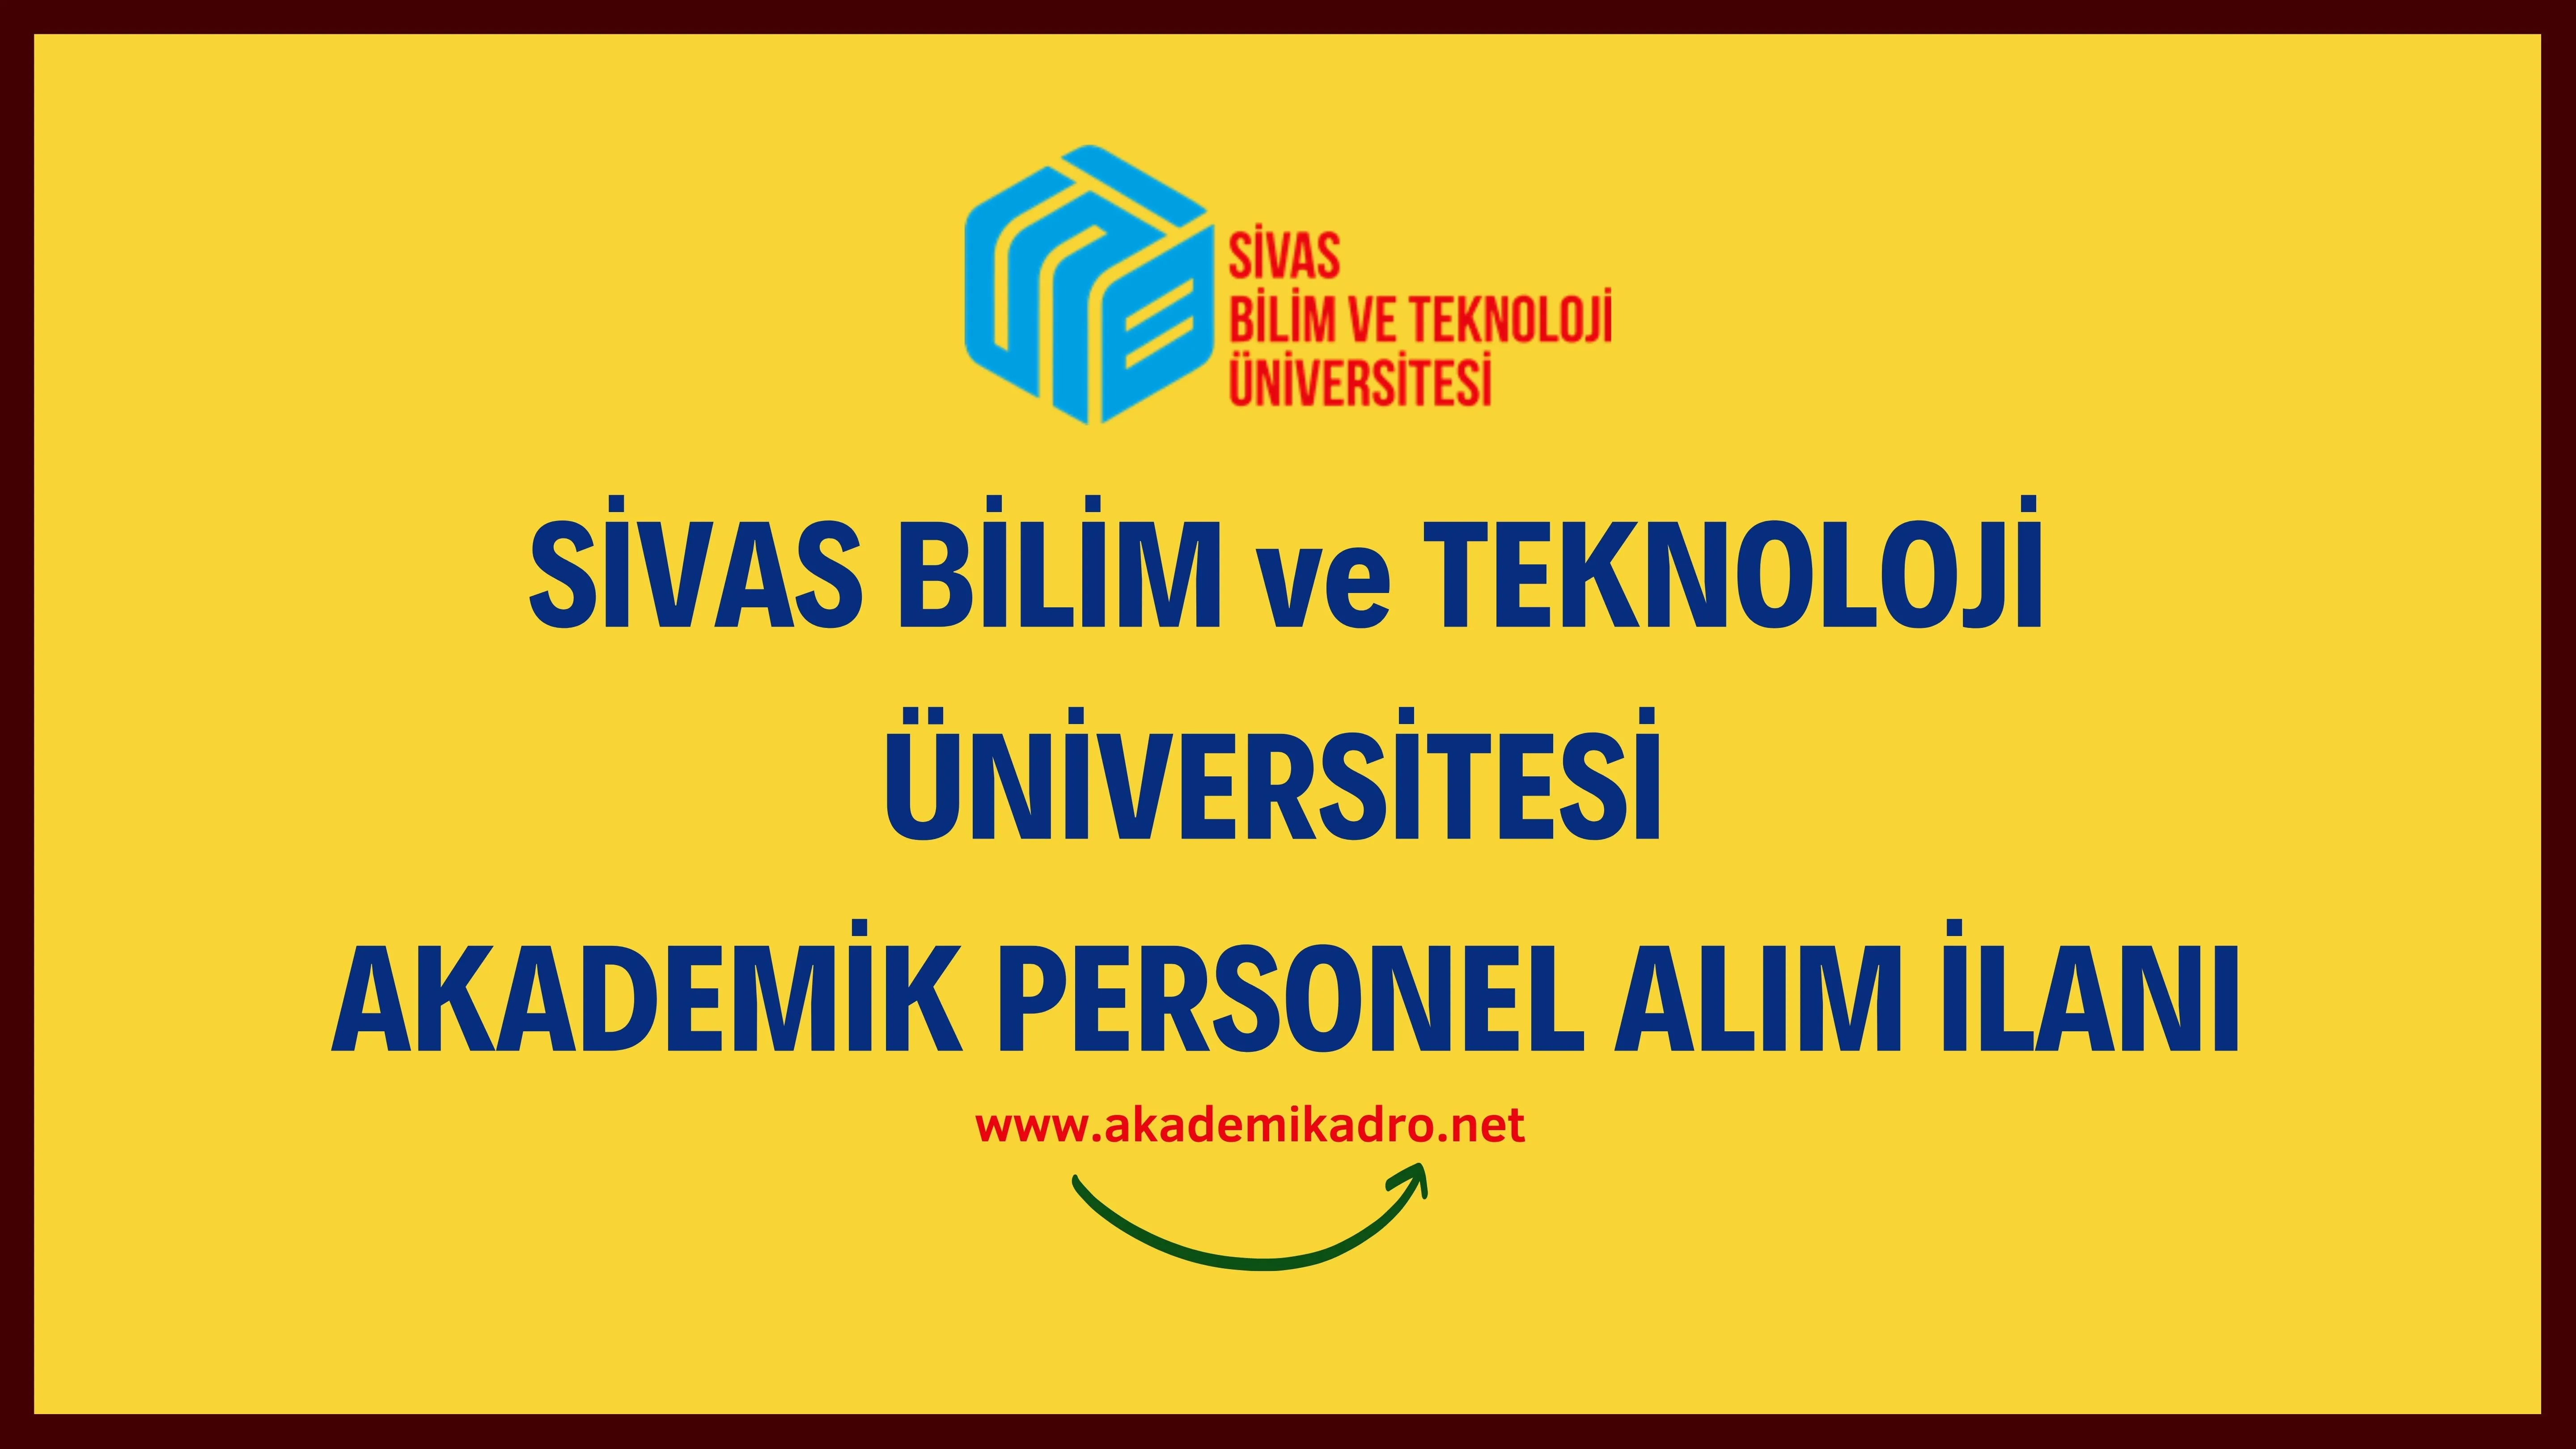 Sivas Bilim ve Teknoloji Üniversitesi birçok alandan 17 akademik personel alacak.